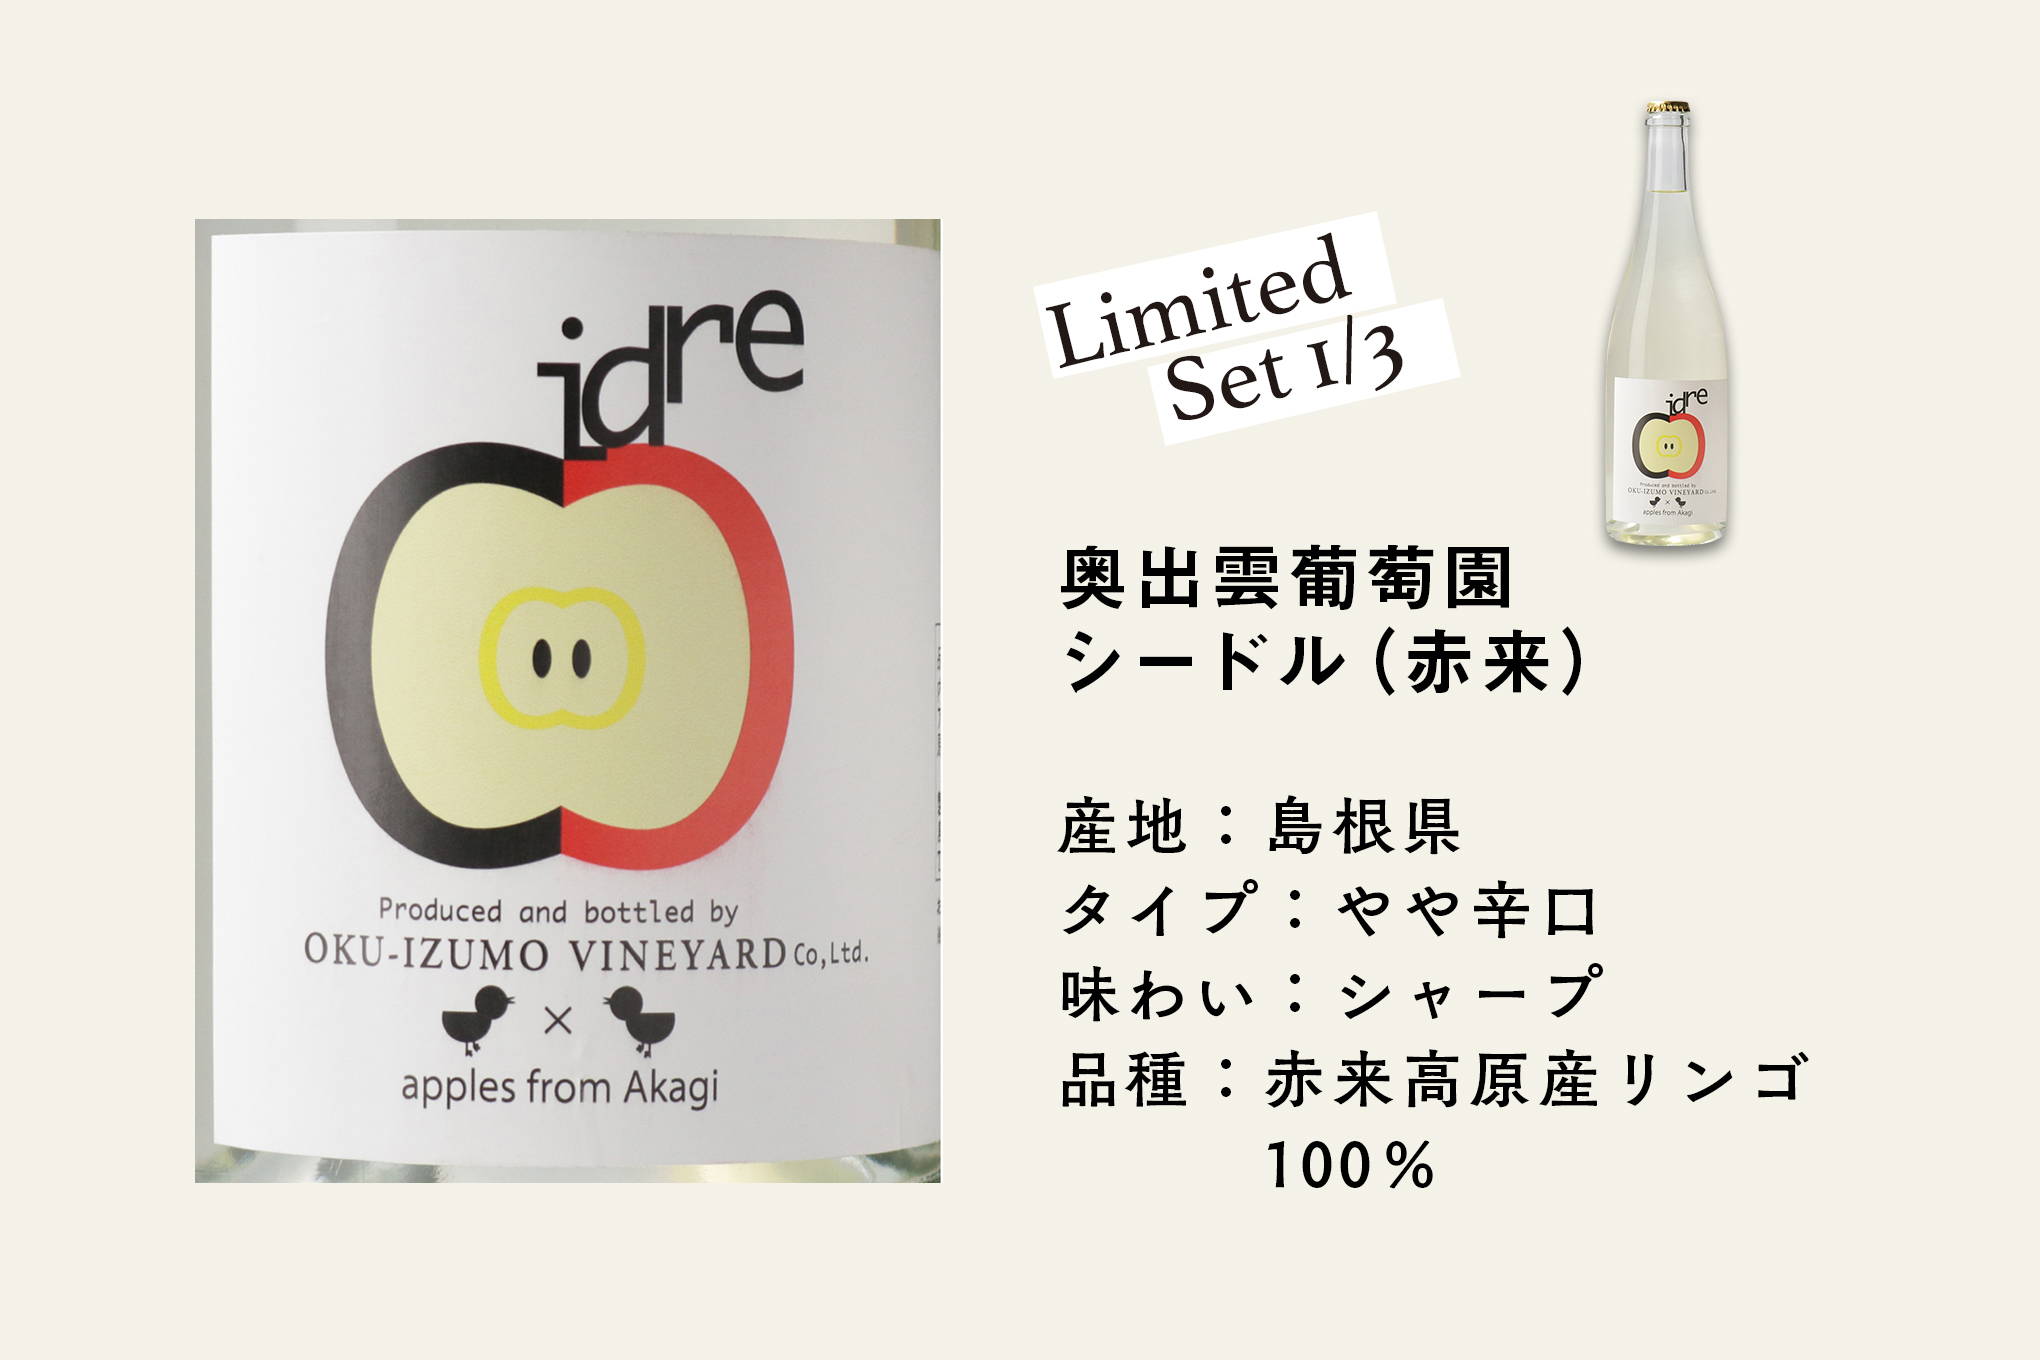 山陰地方を代表するワイナリー「奥出雲葡萄園」が島根県・赤来高原のリンゴを使い、瓶内二次発酵で造ったシードル。溌剌とした泡とすっきりした味わい